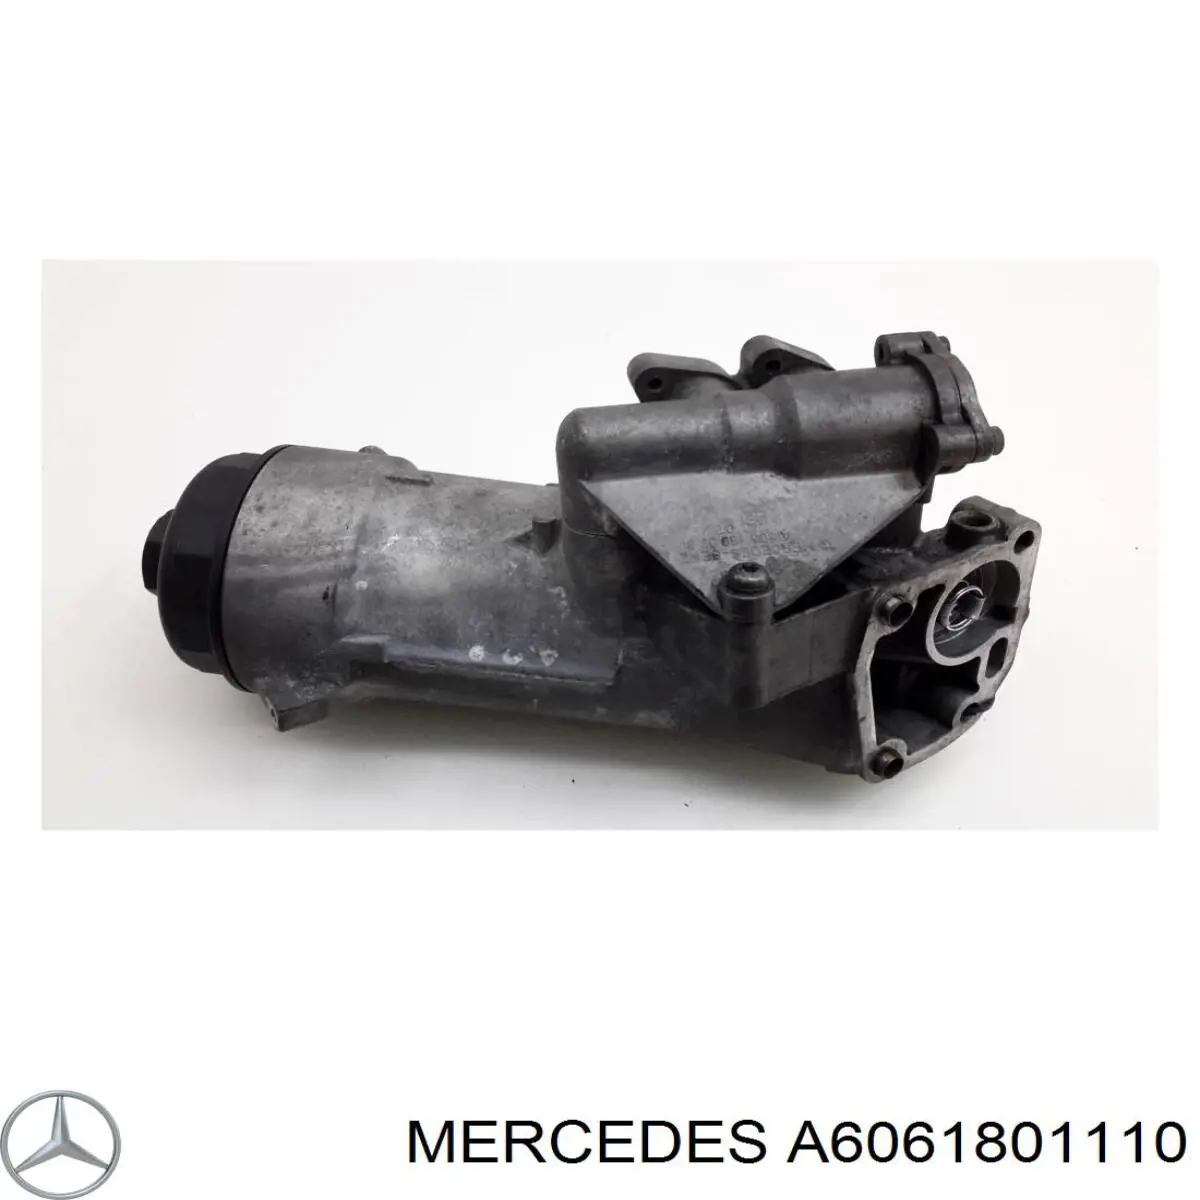 A6061801210 Mercedes caja, filtro de aceite